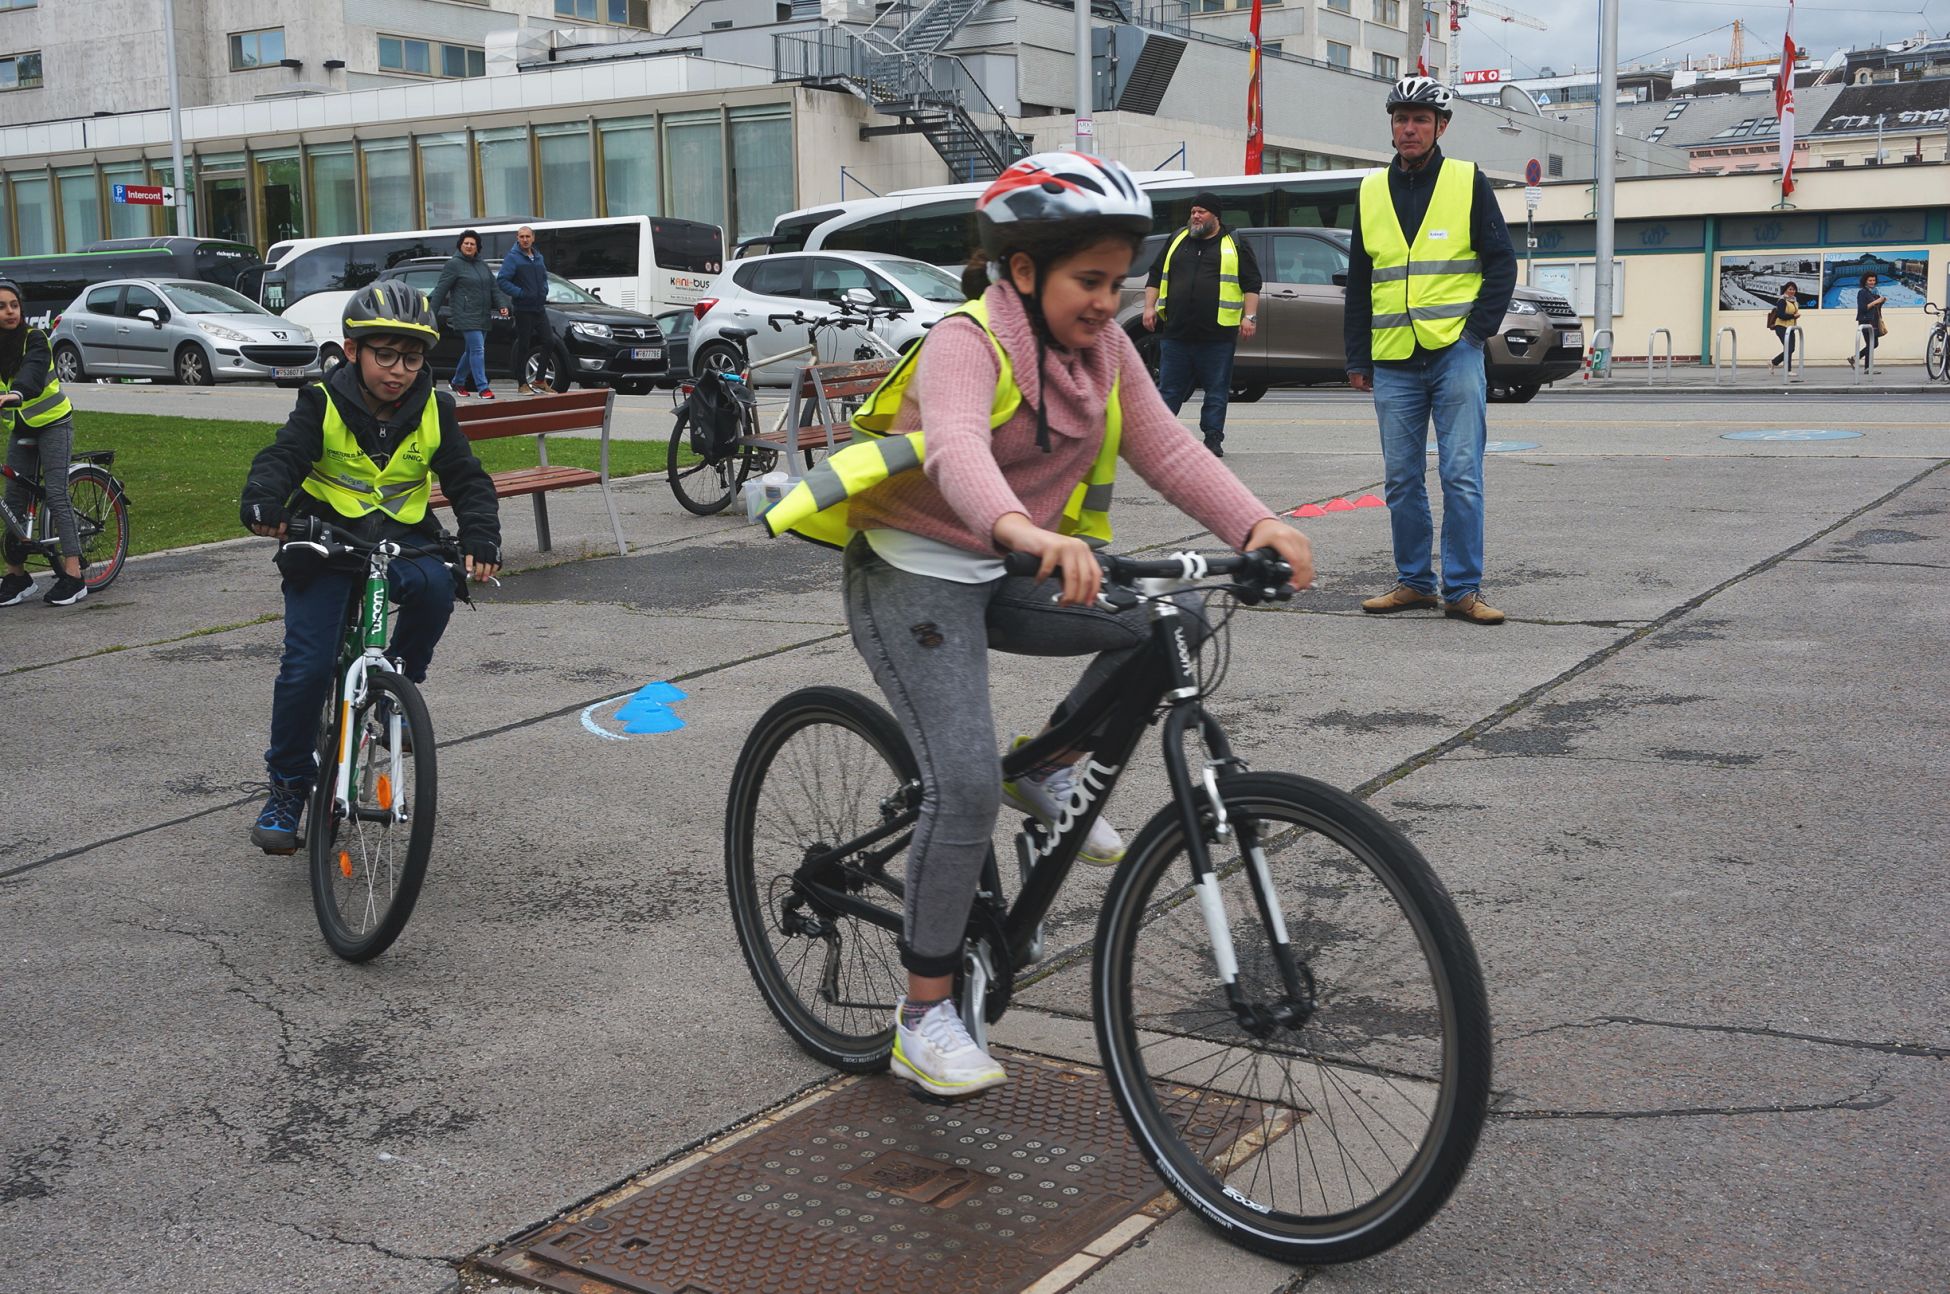 Mit dem Rad zur Schule fahren: das wollen viele Kinder. Bei der Radfahrschule „Schulterblick“ bekommen sie das Rüstzeug dafür. Verkehrszeichen lernen, Handzeichen üben und gemeinsam Radeln.